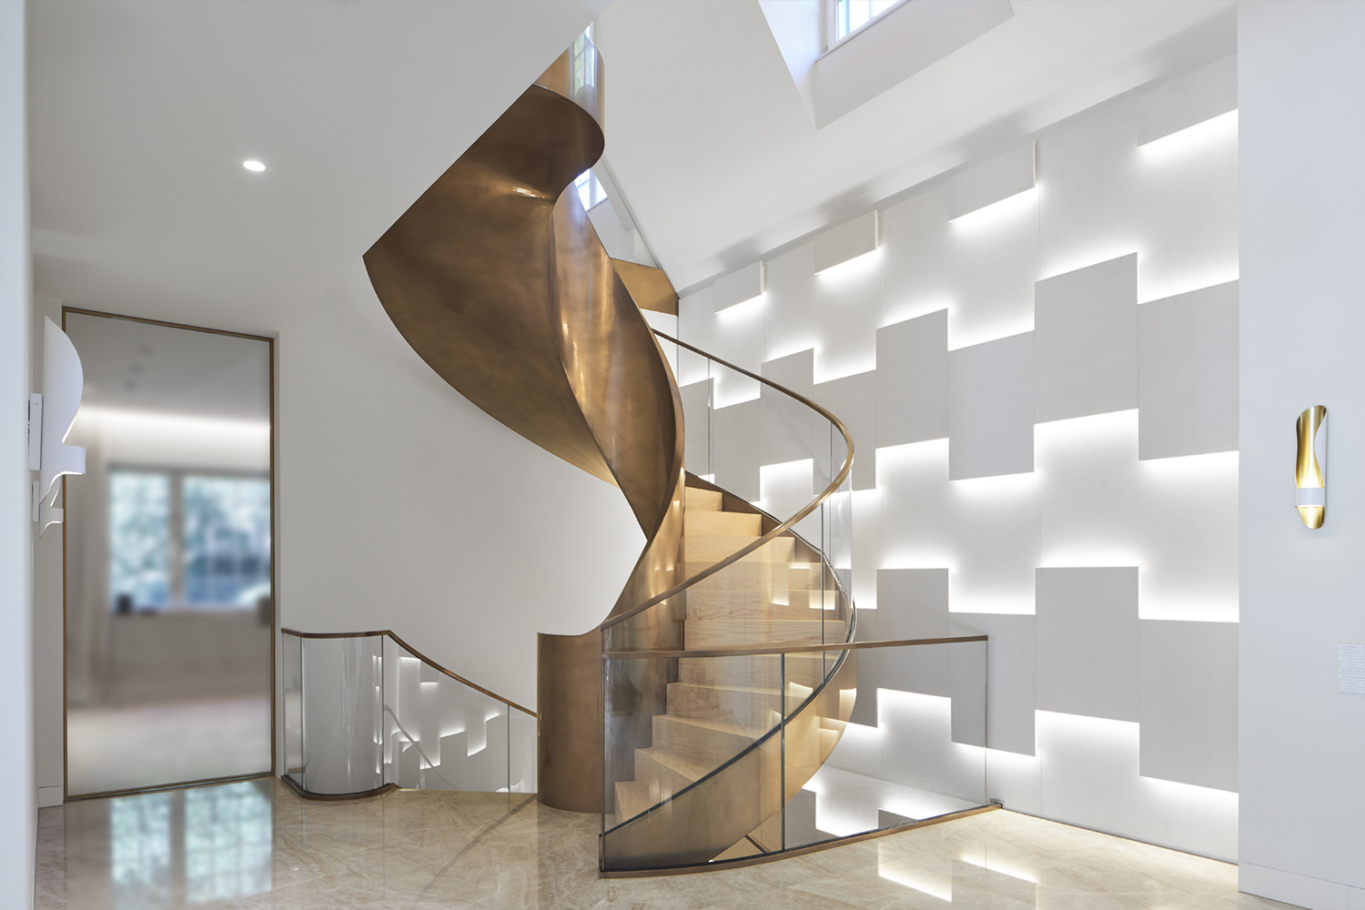 Interiorfotografie: In einer Villa in Köln wurde von der Fa. Metallart eine repräsentative Wendeltreppe über drei Etagen aus Metall (Kupfer) und Glasgeländern gebaut.